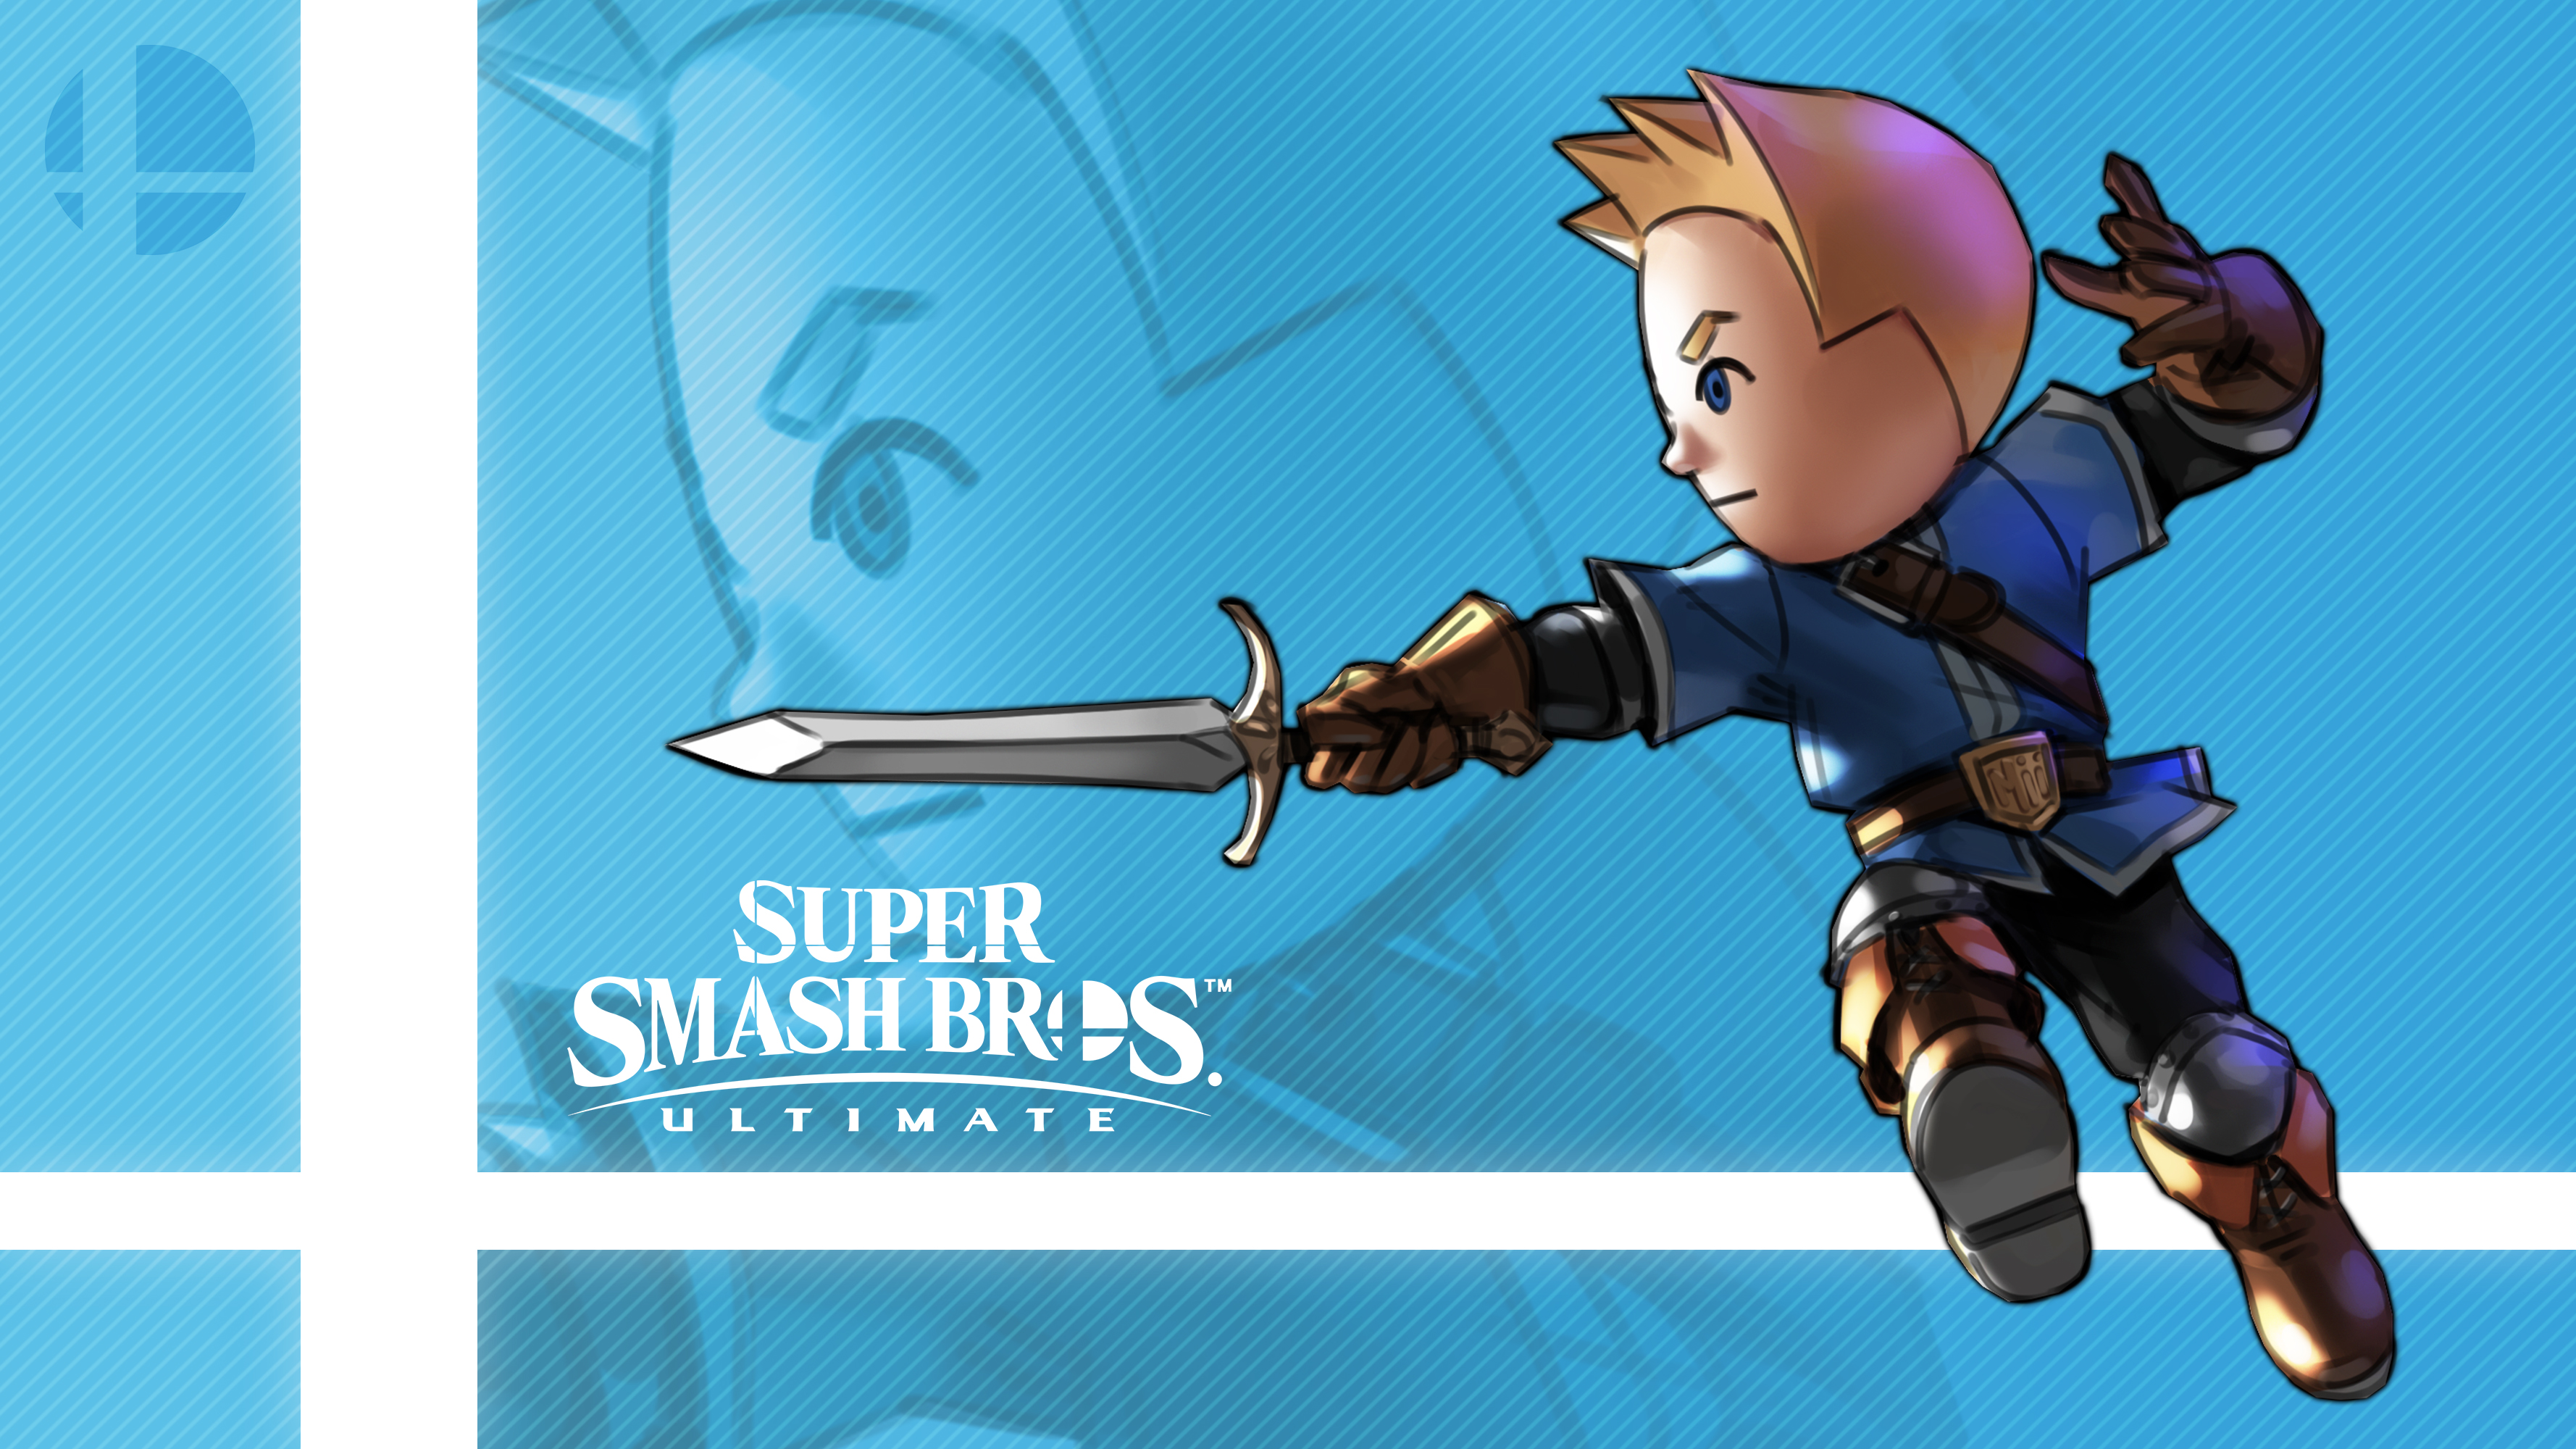 Mii Swordfighter In Super Smash Bros. Ultimate by Callum Nakajima